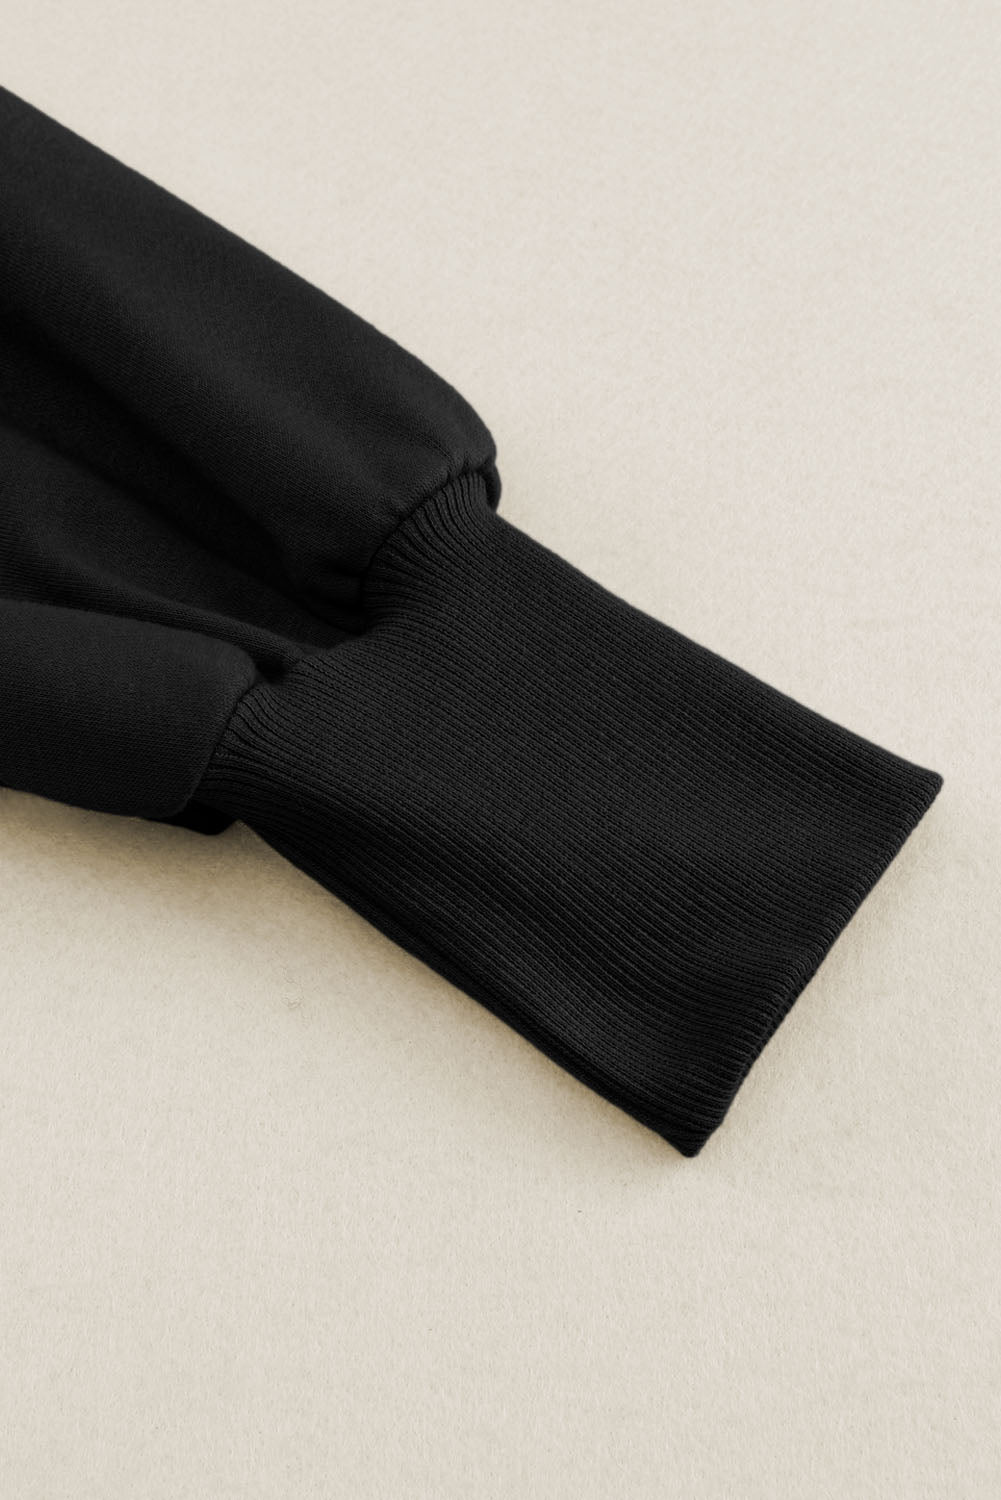 Schwarzer Kapuzenpullover mit offenem Rand und freiliegenden Nähten und durchgehendem Reißverschluss